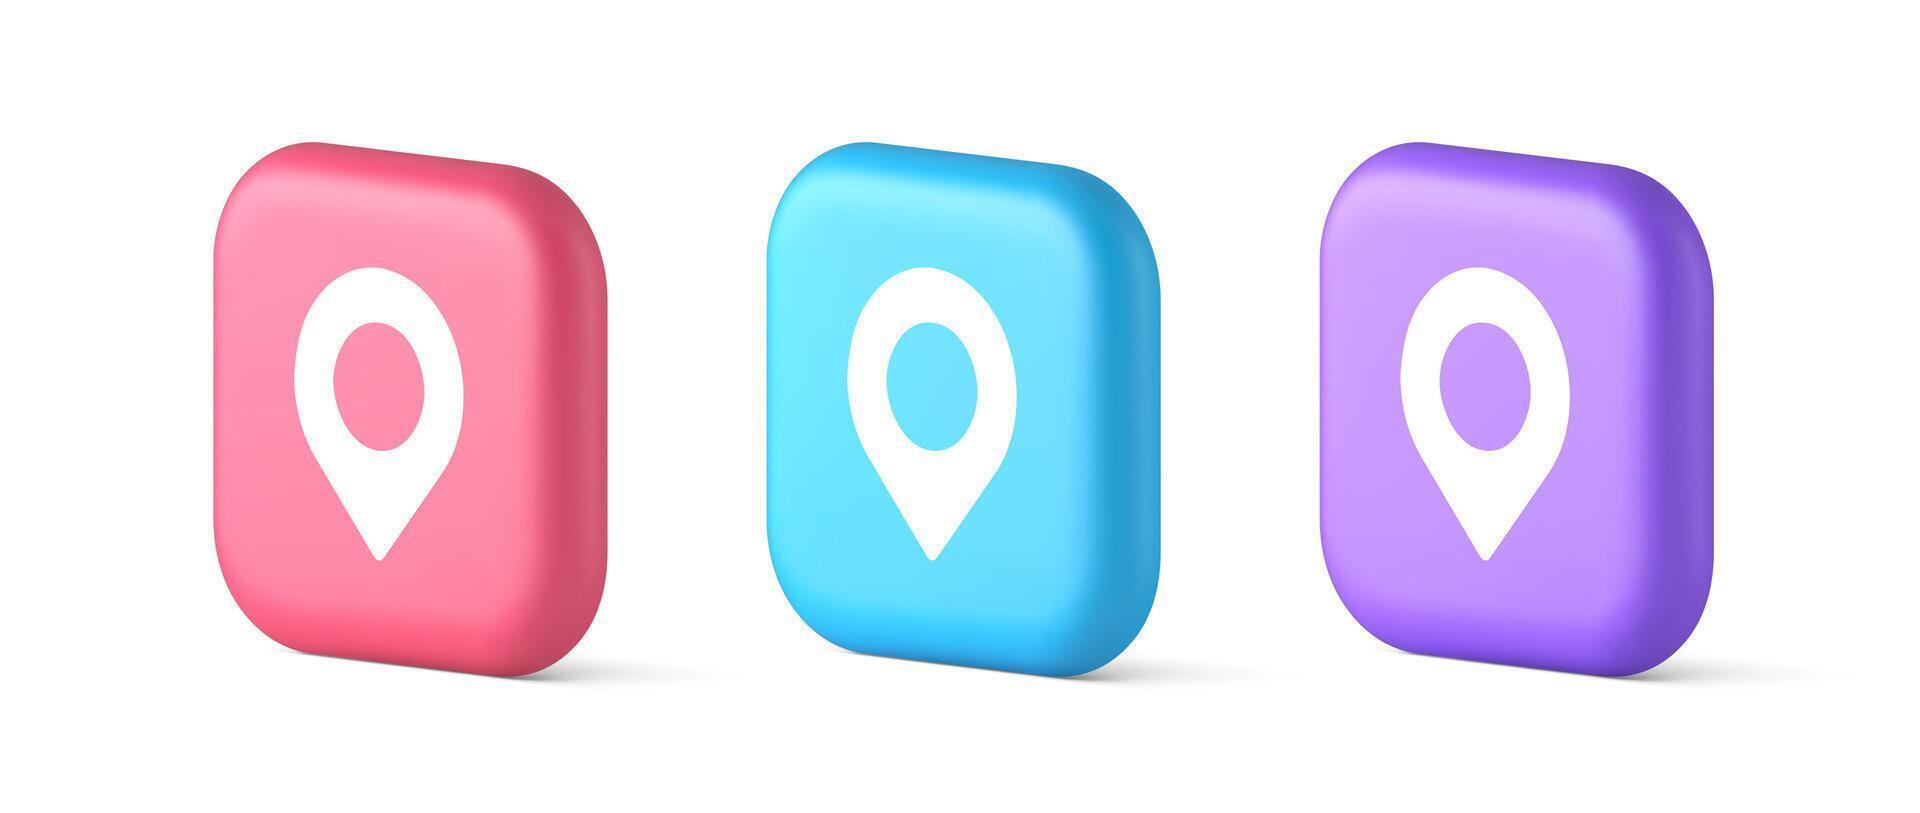 GPS carte épingle emplacement un service bouton application direction distance aiguille 3d réaliste icône vecteur